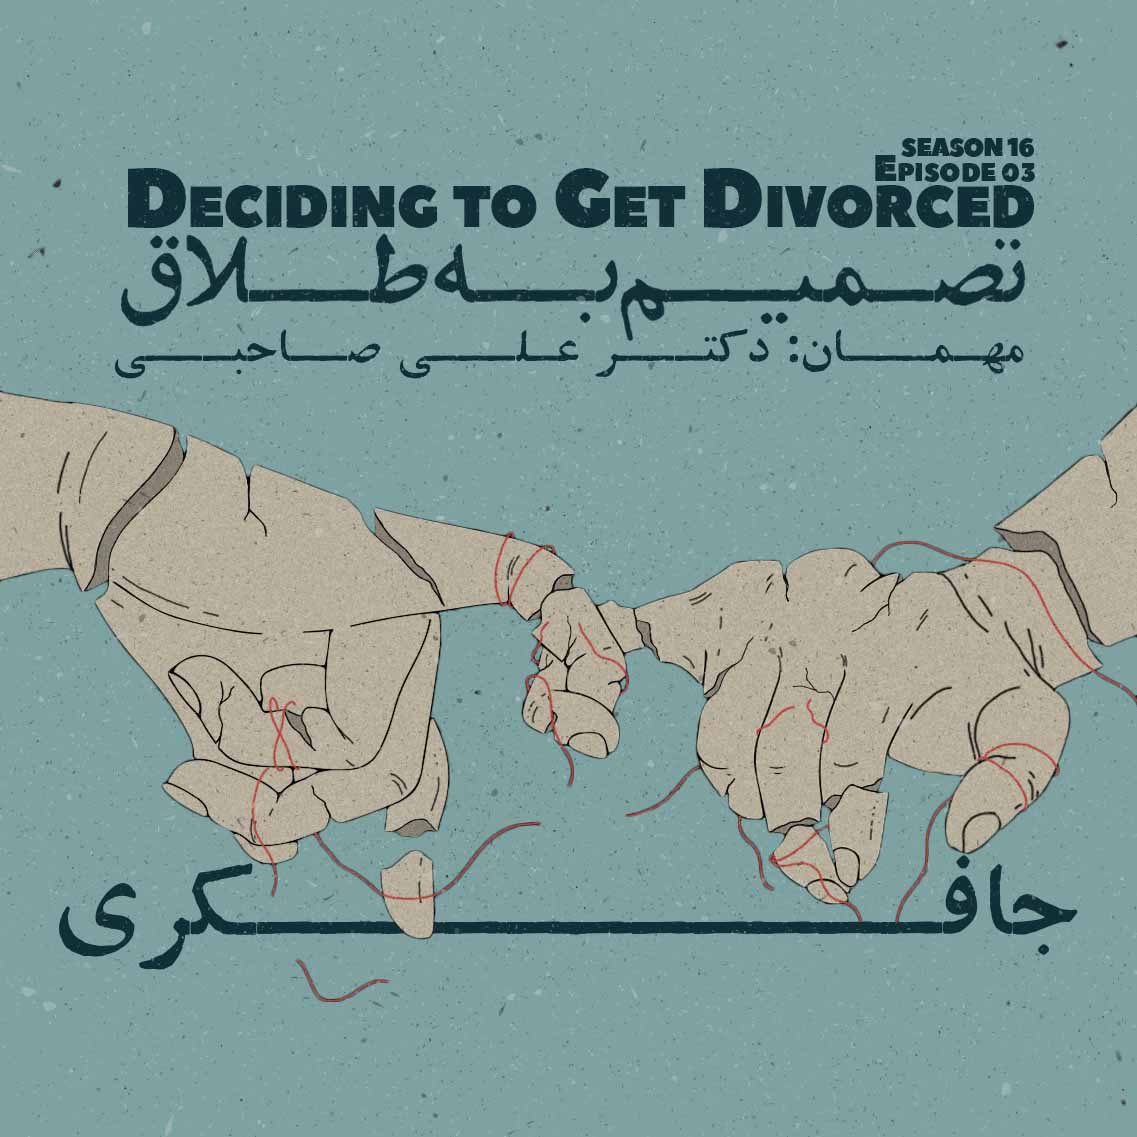 Episode 03 - Deciding to get Divorced (تصمیم به طلاق)